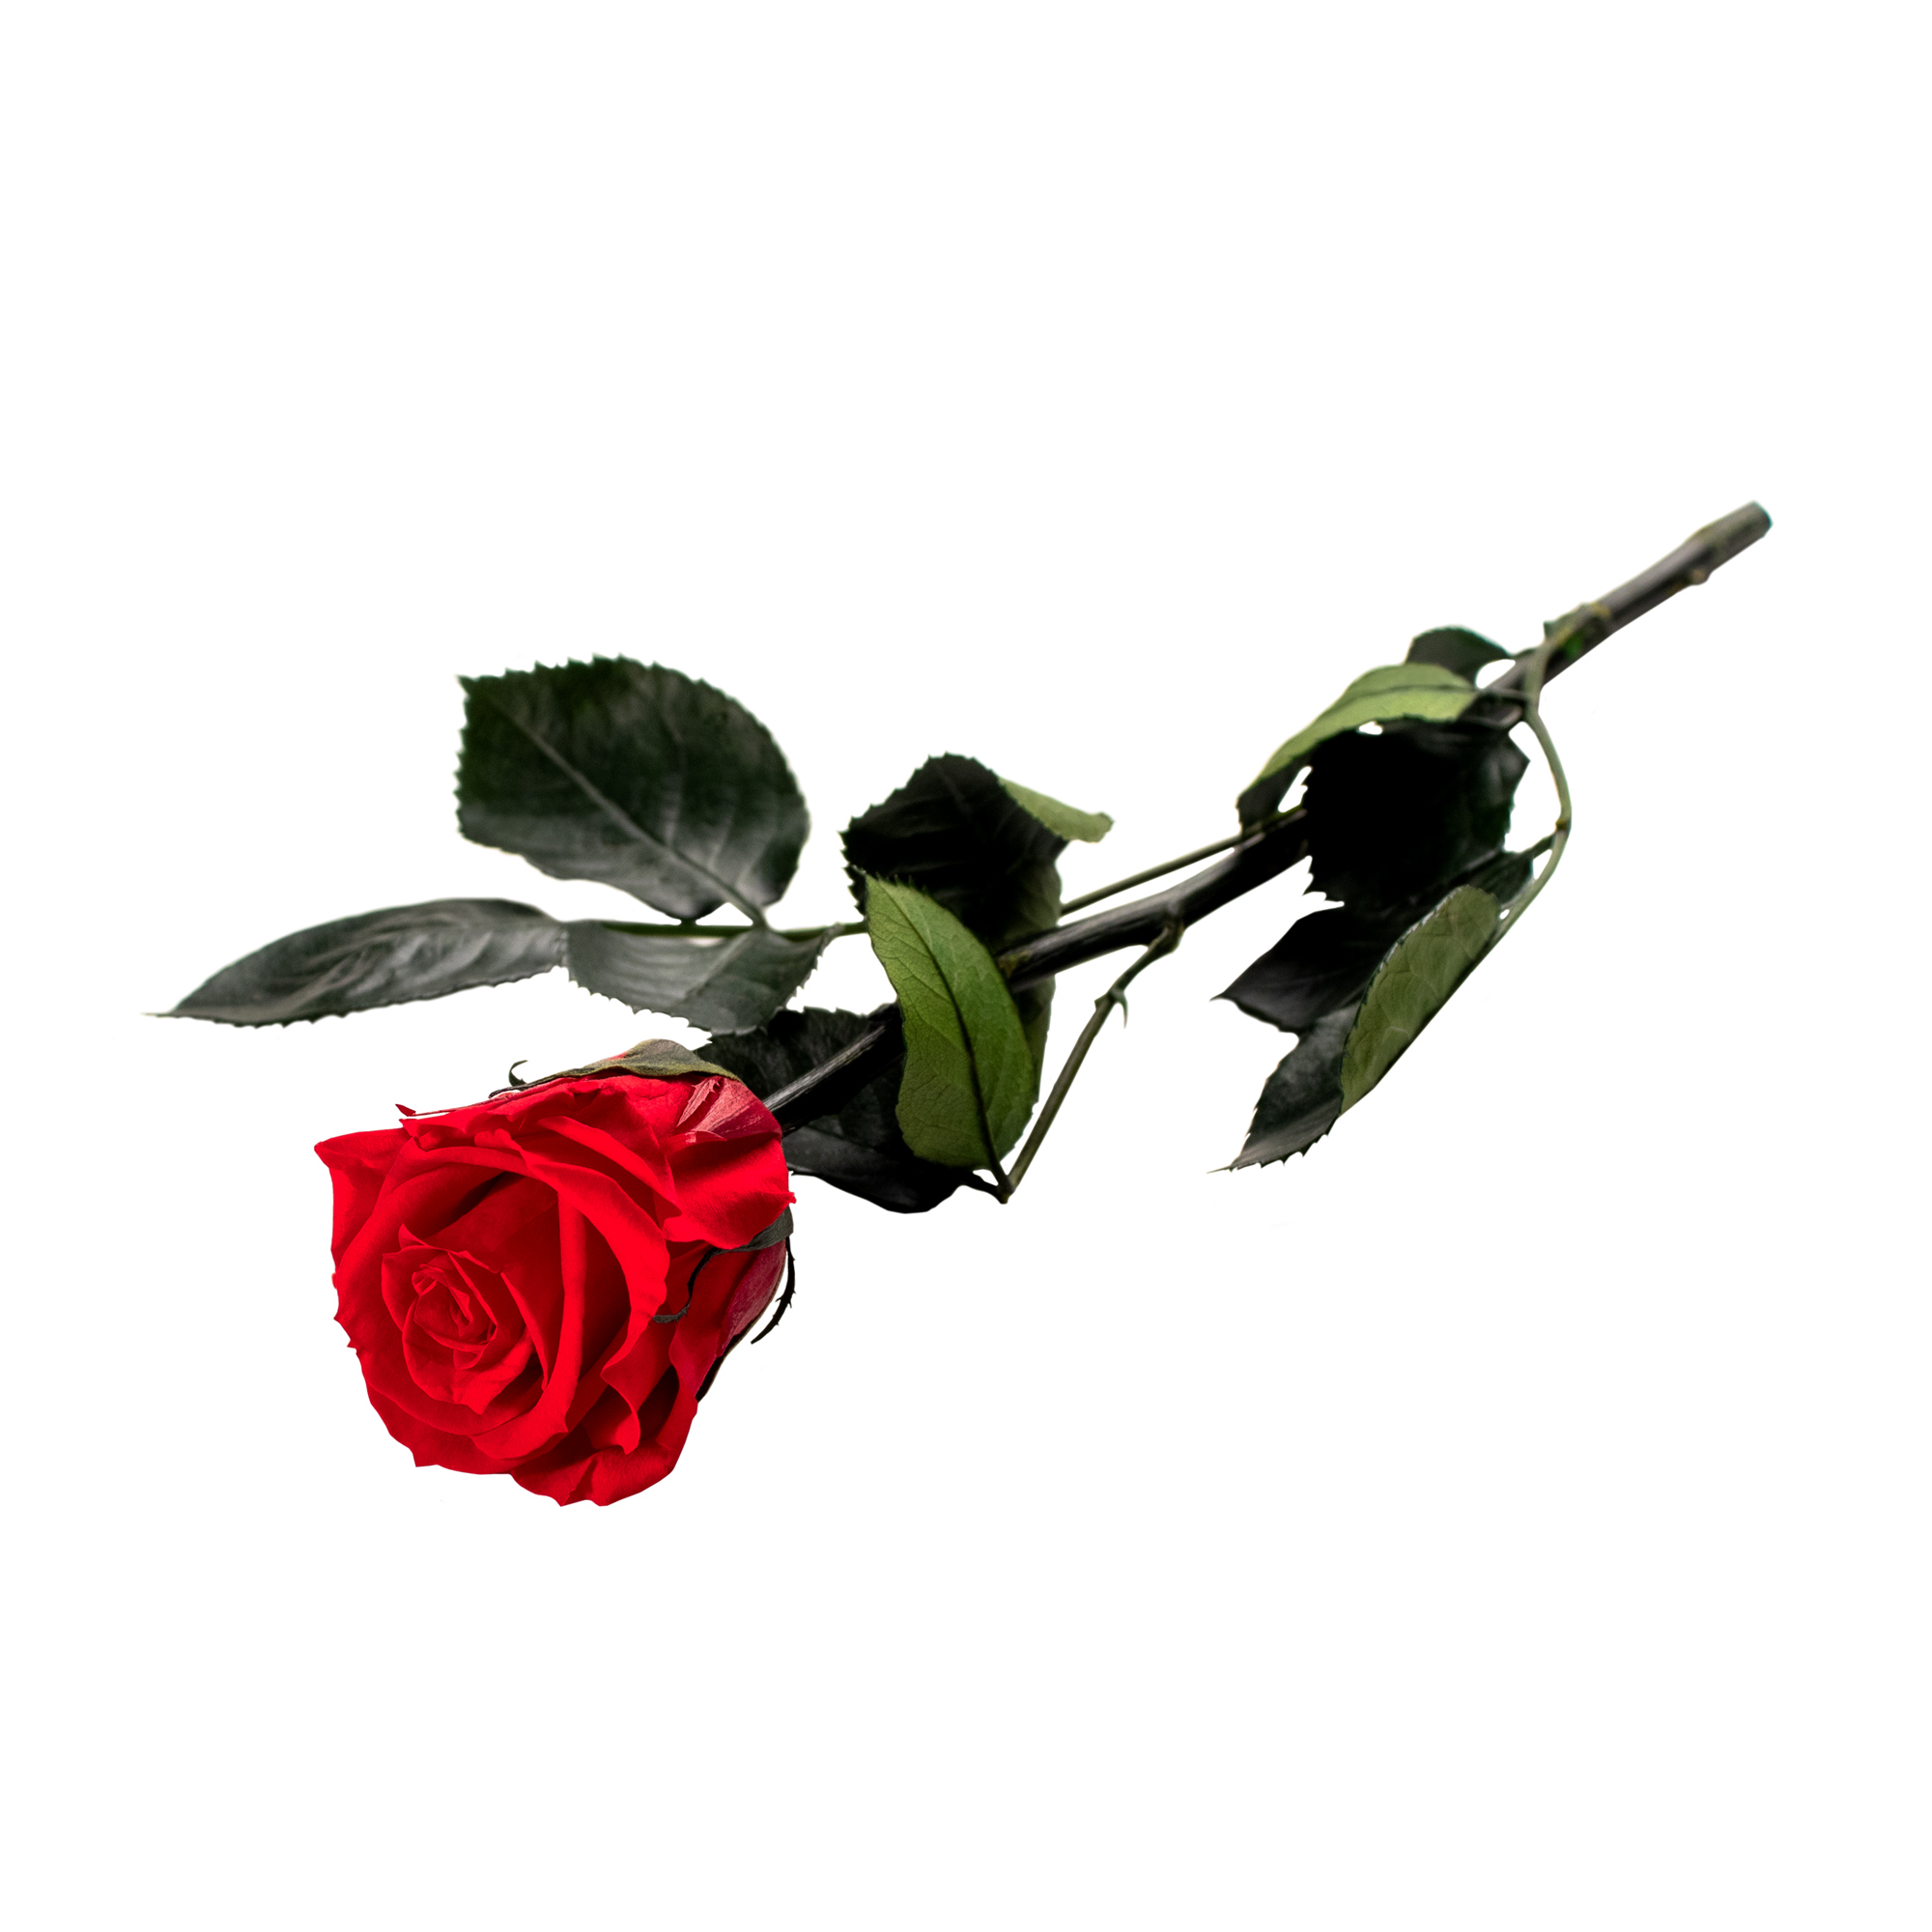 Unvergängliche Rose - Geschenkidee Valentinstag